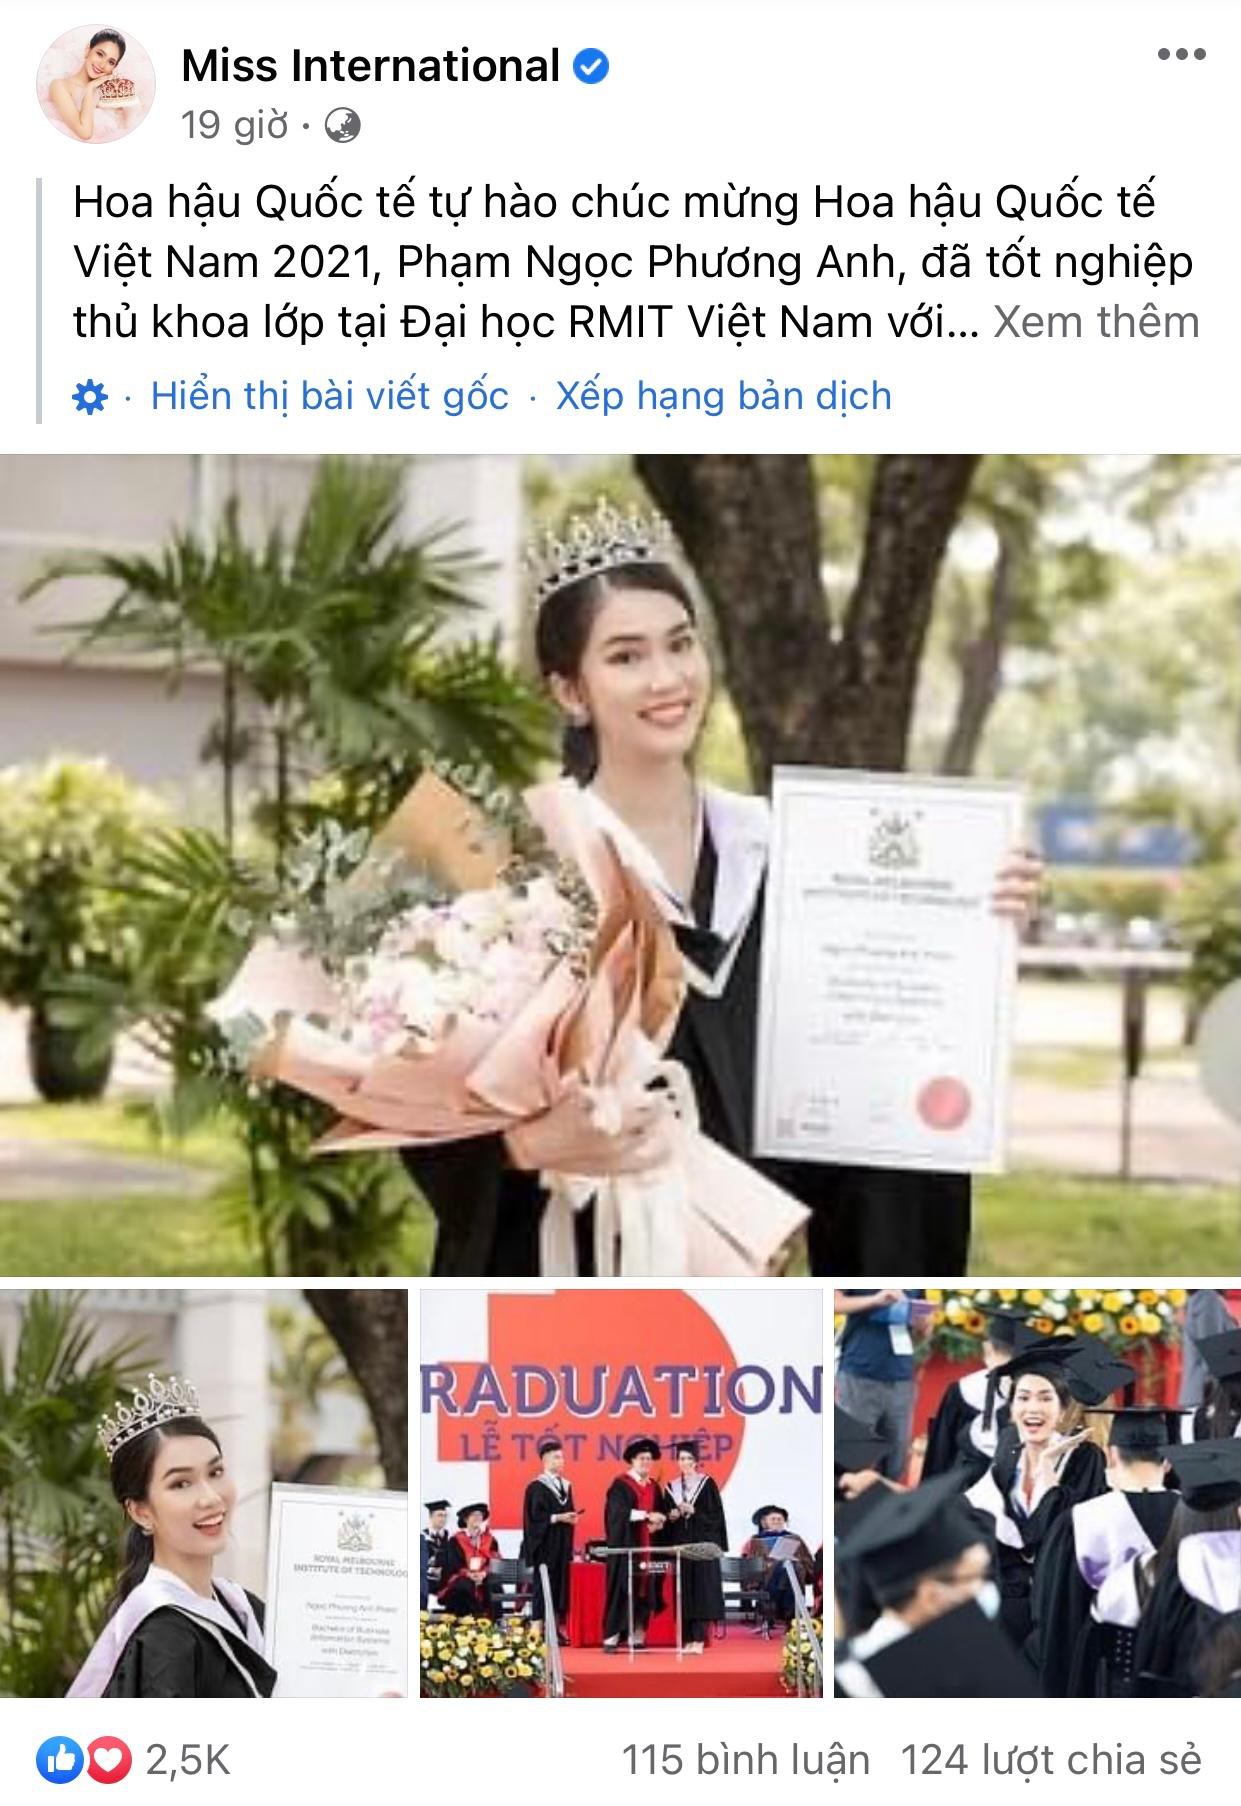 Trang chủ chính thức của Miss International gửi lời chúc mừng Á hậu Phương Anh khi cô trở thành thủ khoa của Miss International